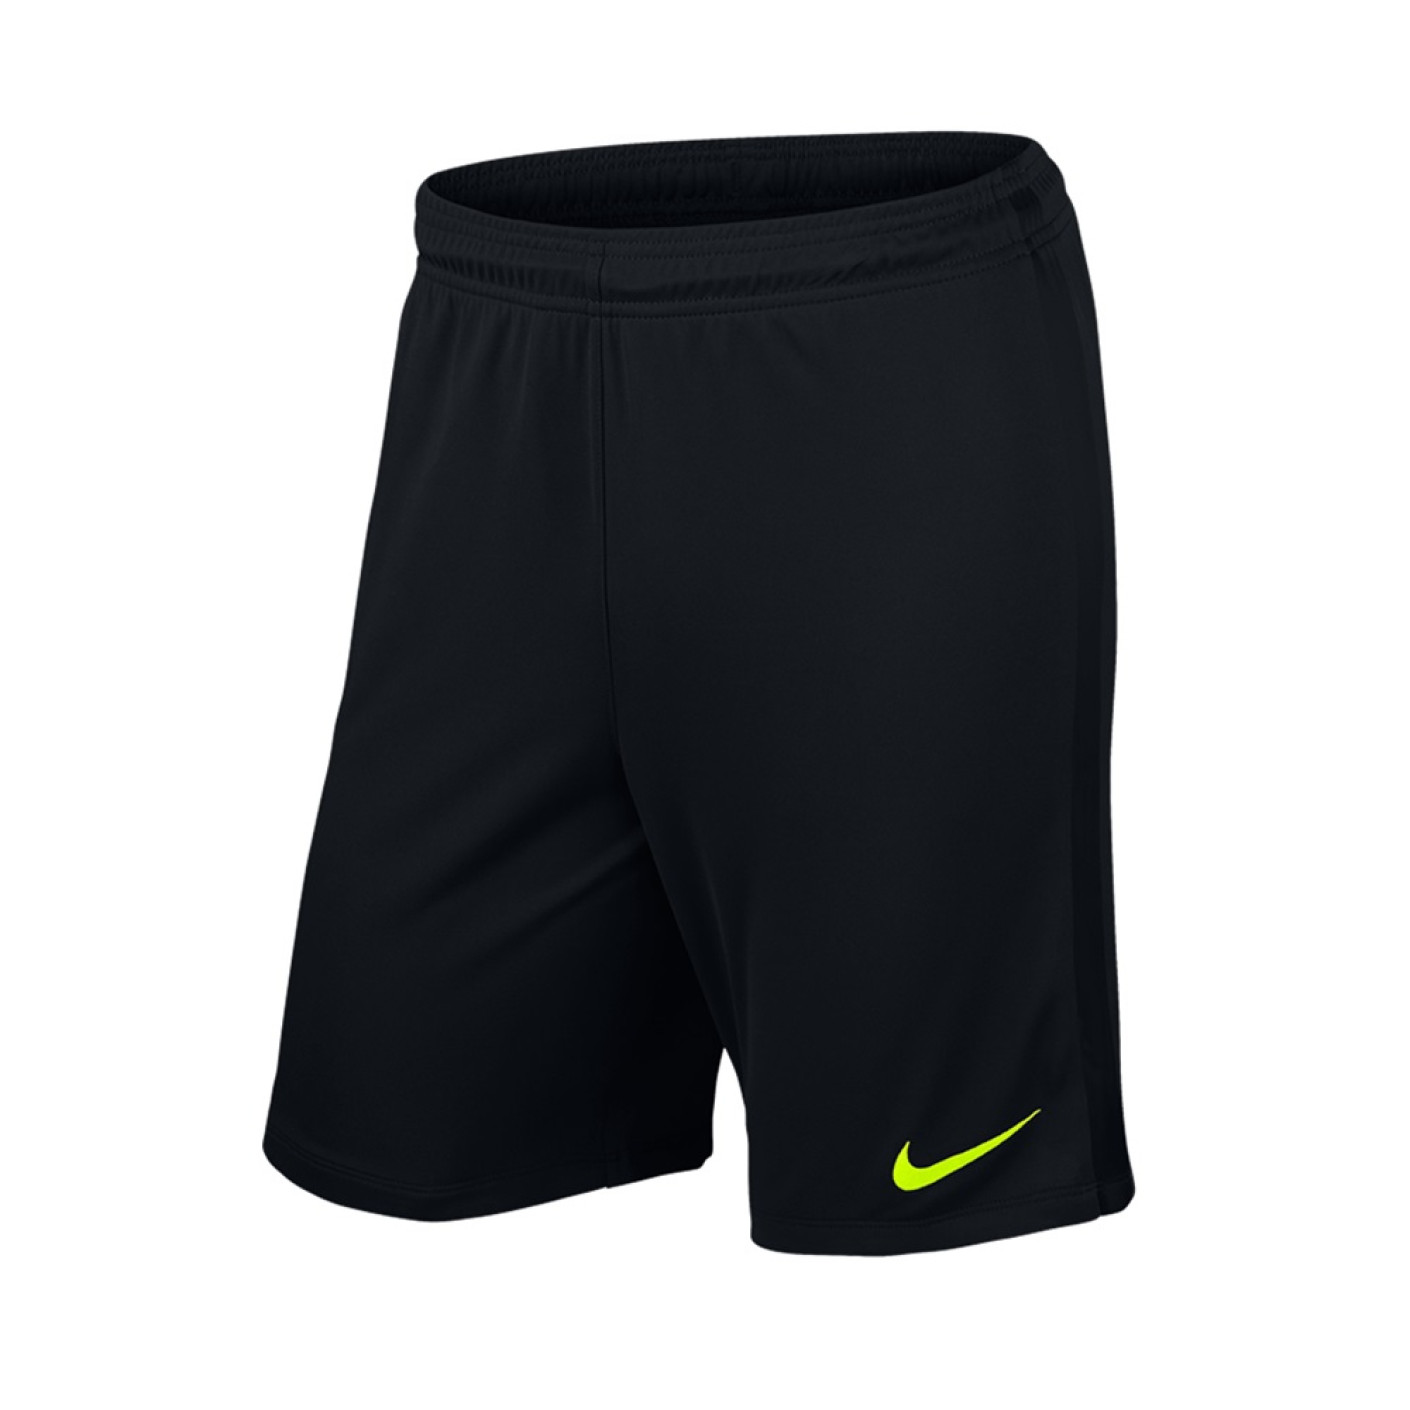 Nike League Voetbalbroekje Zonder Binnenbroek Zwart Groen